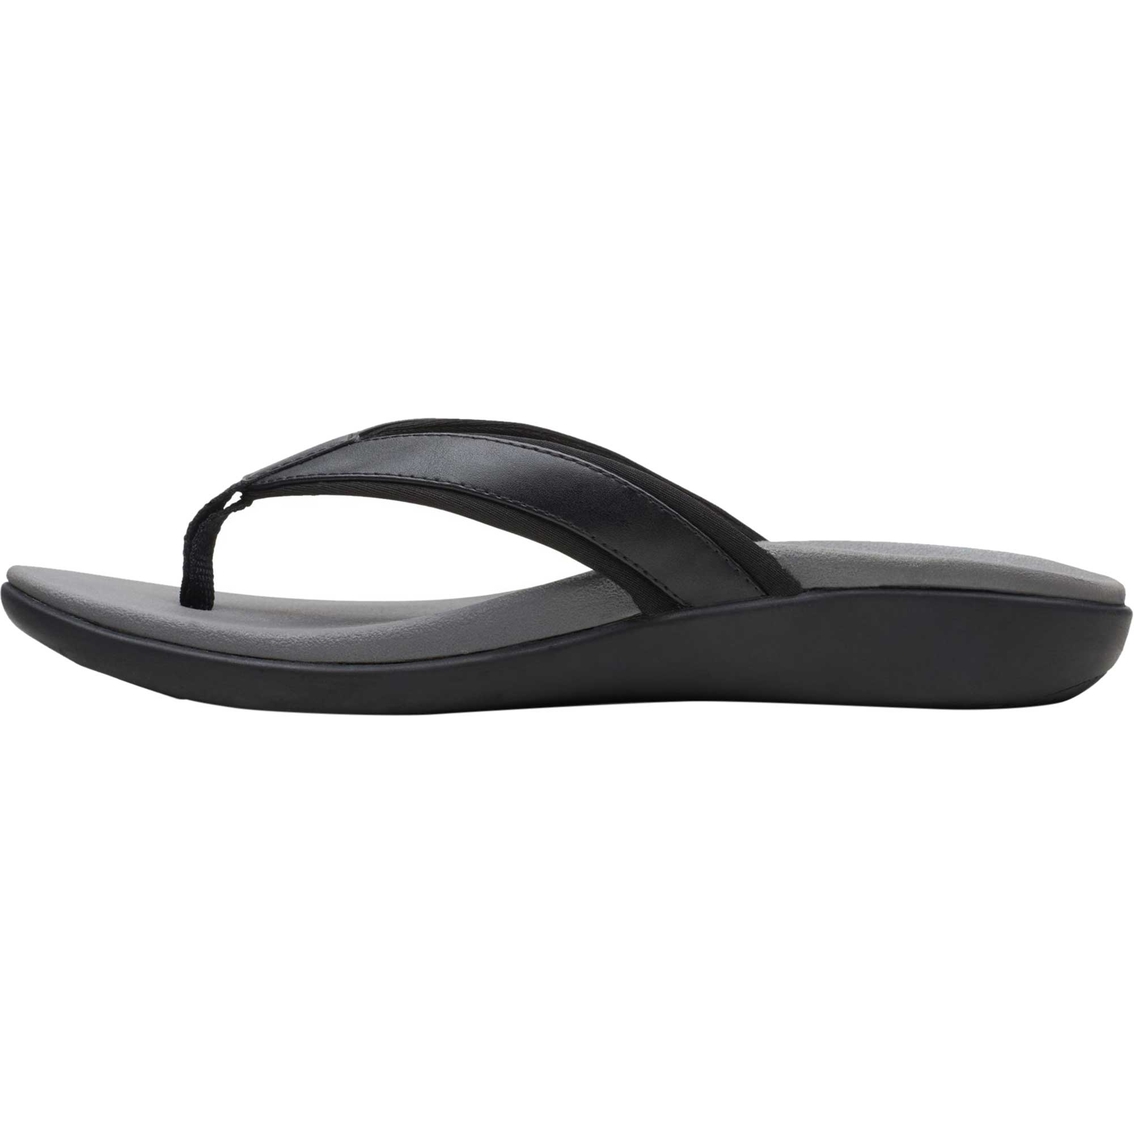 Clarks Women's Brio Sol Flip Flop Sandals | Flip Flops | Shoes | Shop ...